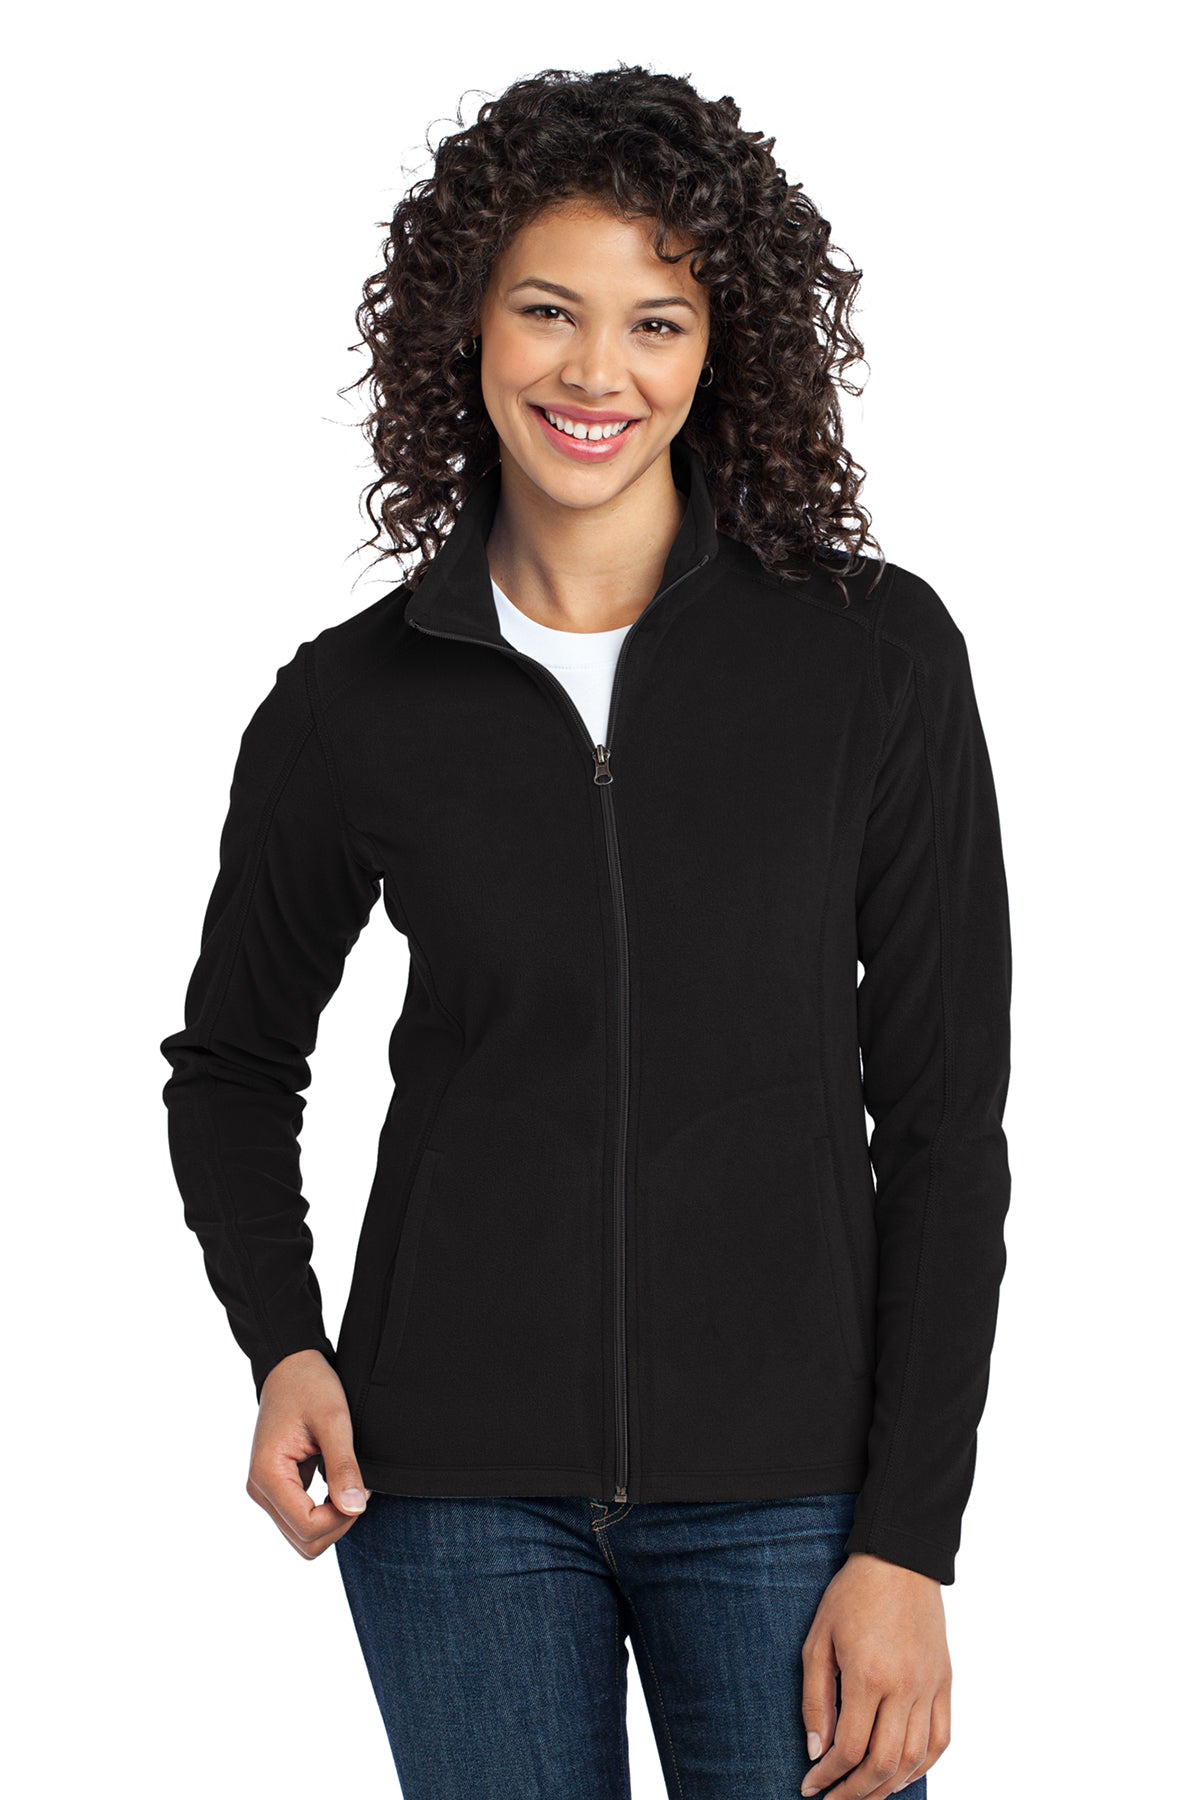 Port Authority L223 Women's Microfleece Zip Jacket Black 